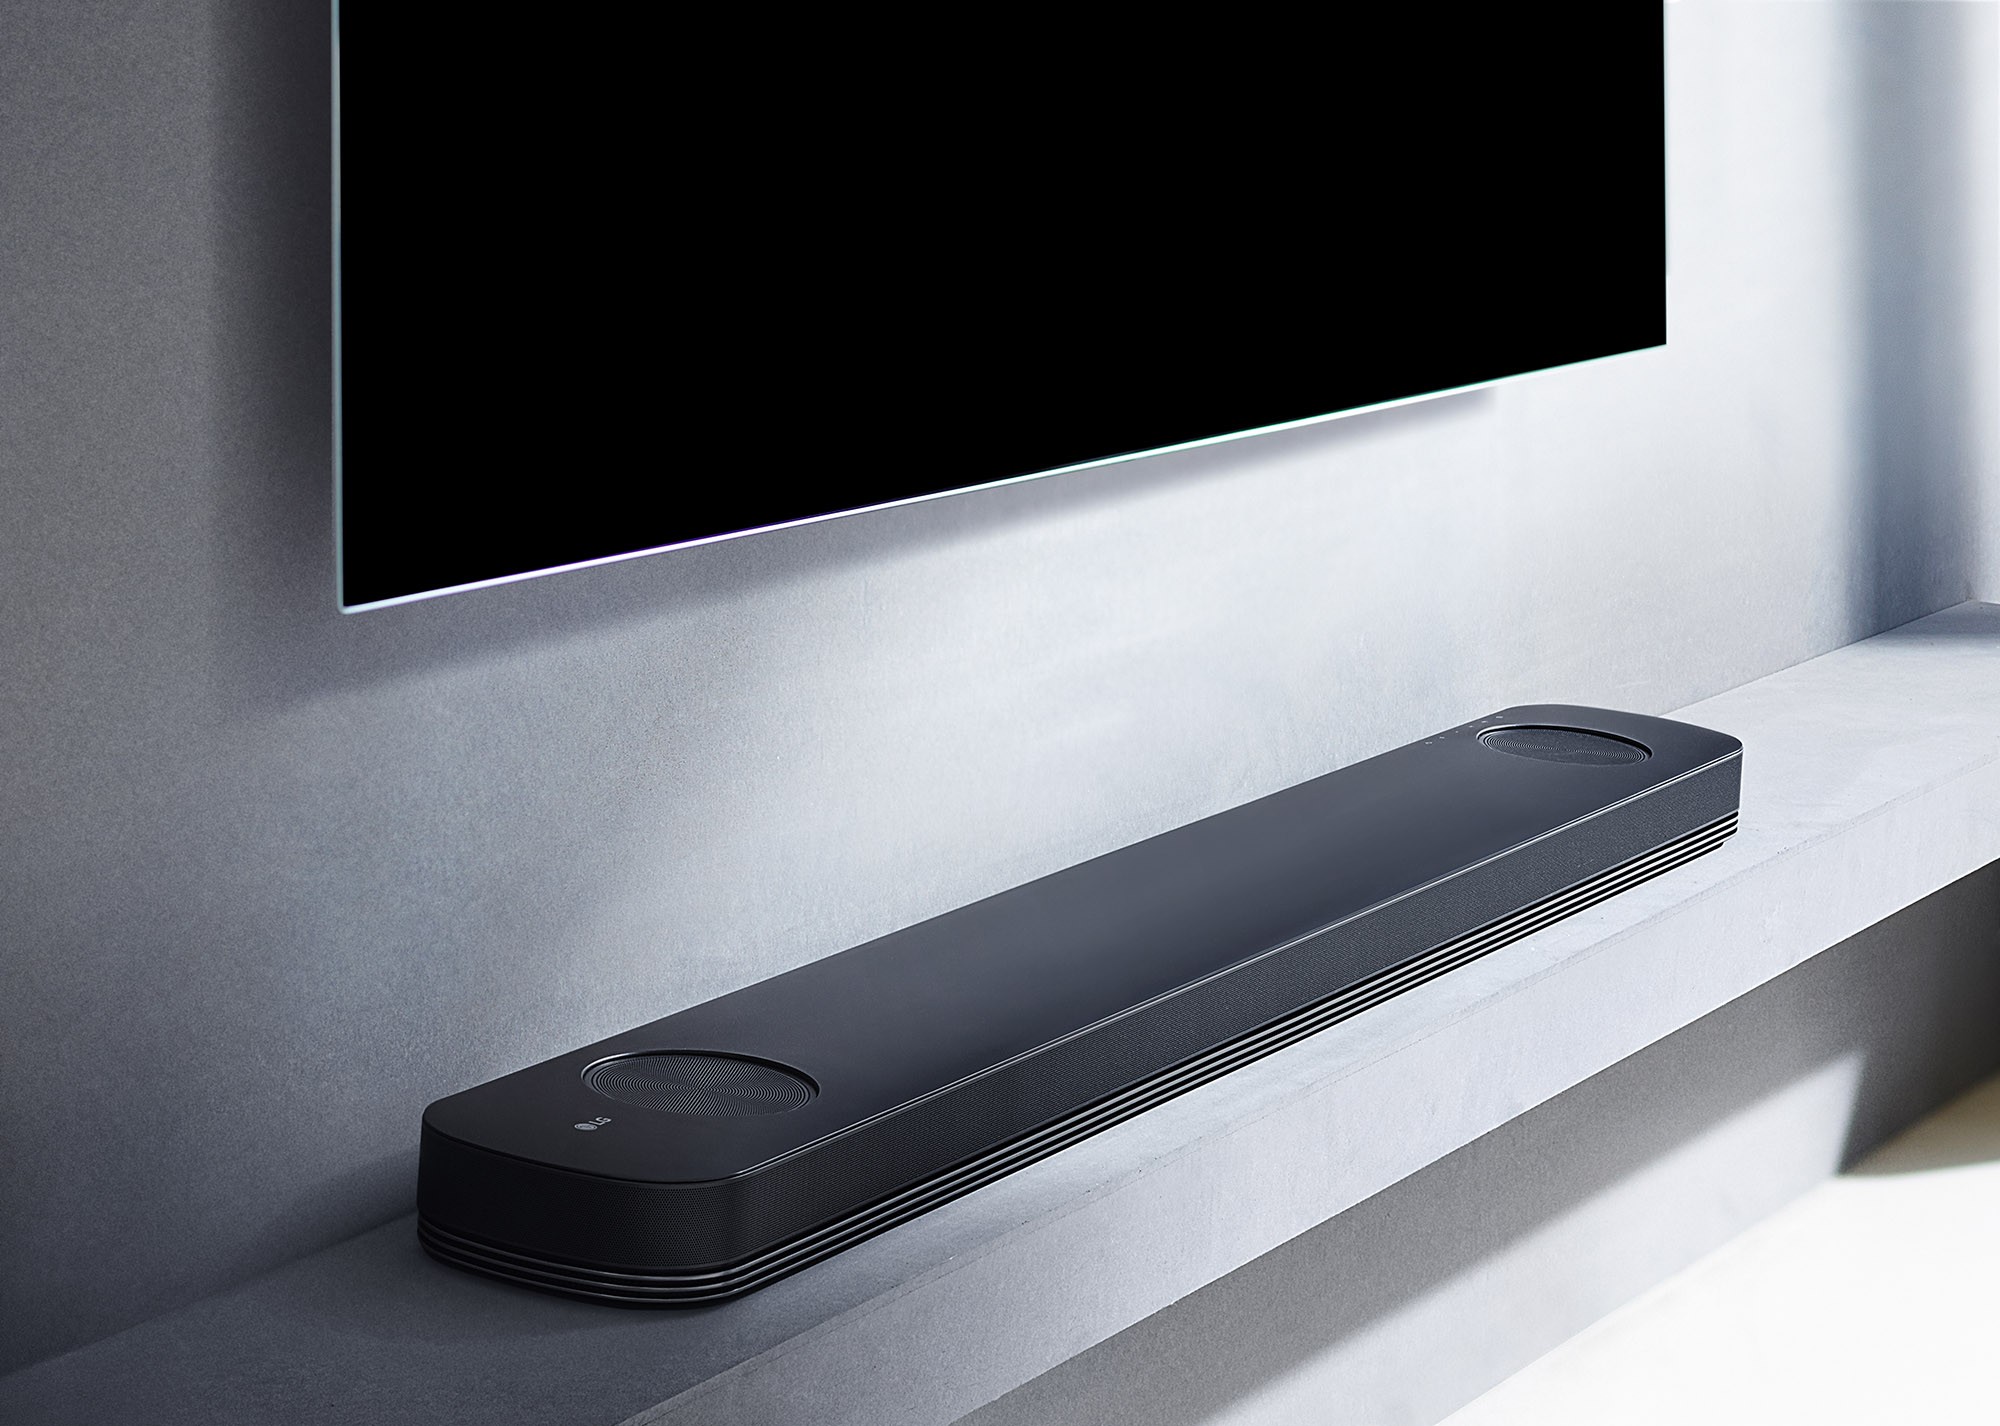 LG reveals SJ soundbar series with hires audio and builtin Chromecast